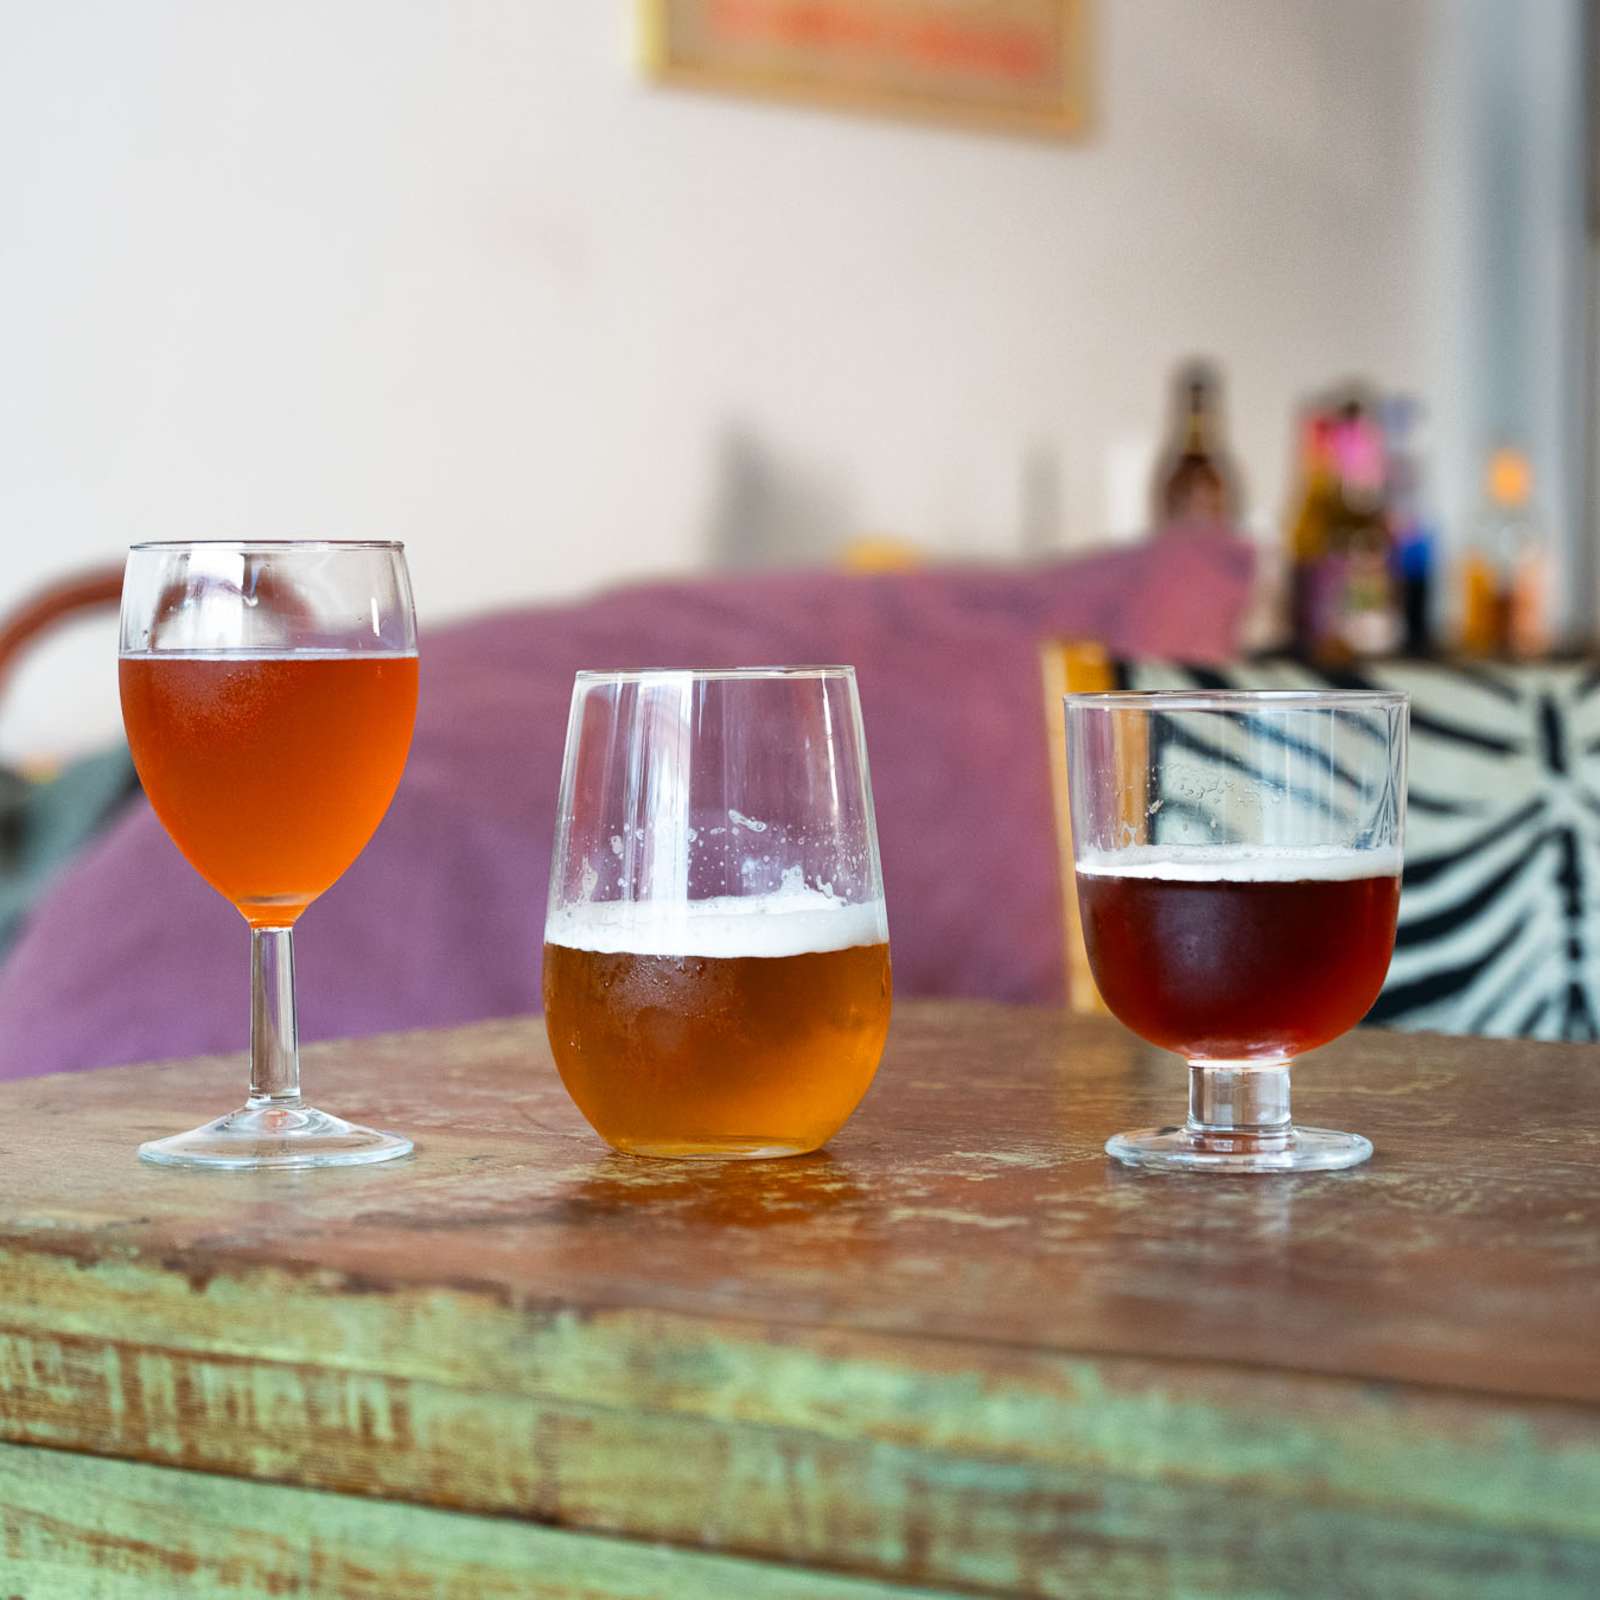 Viisi olutlasia rivissä pöydällä. Jokaisessa lasissa on eri olutta.